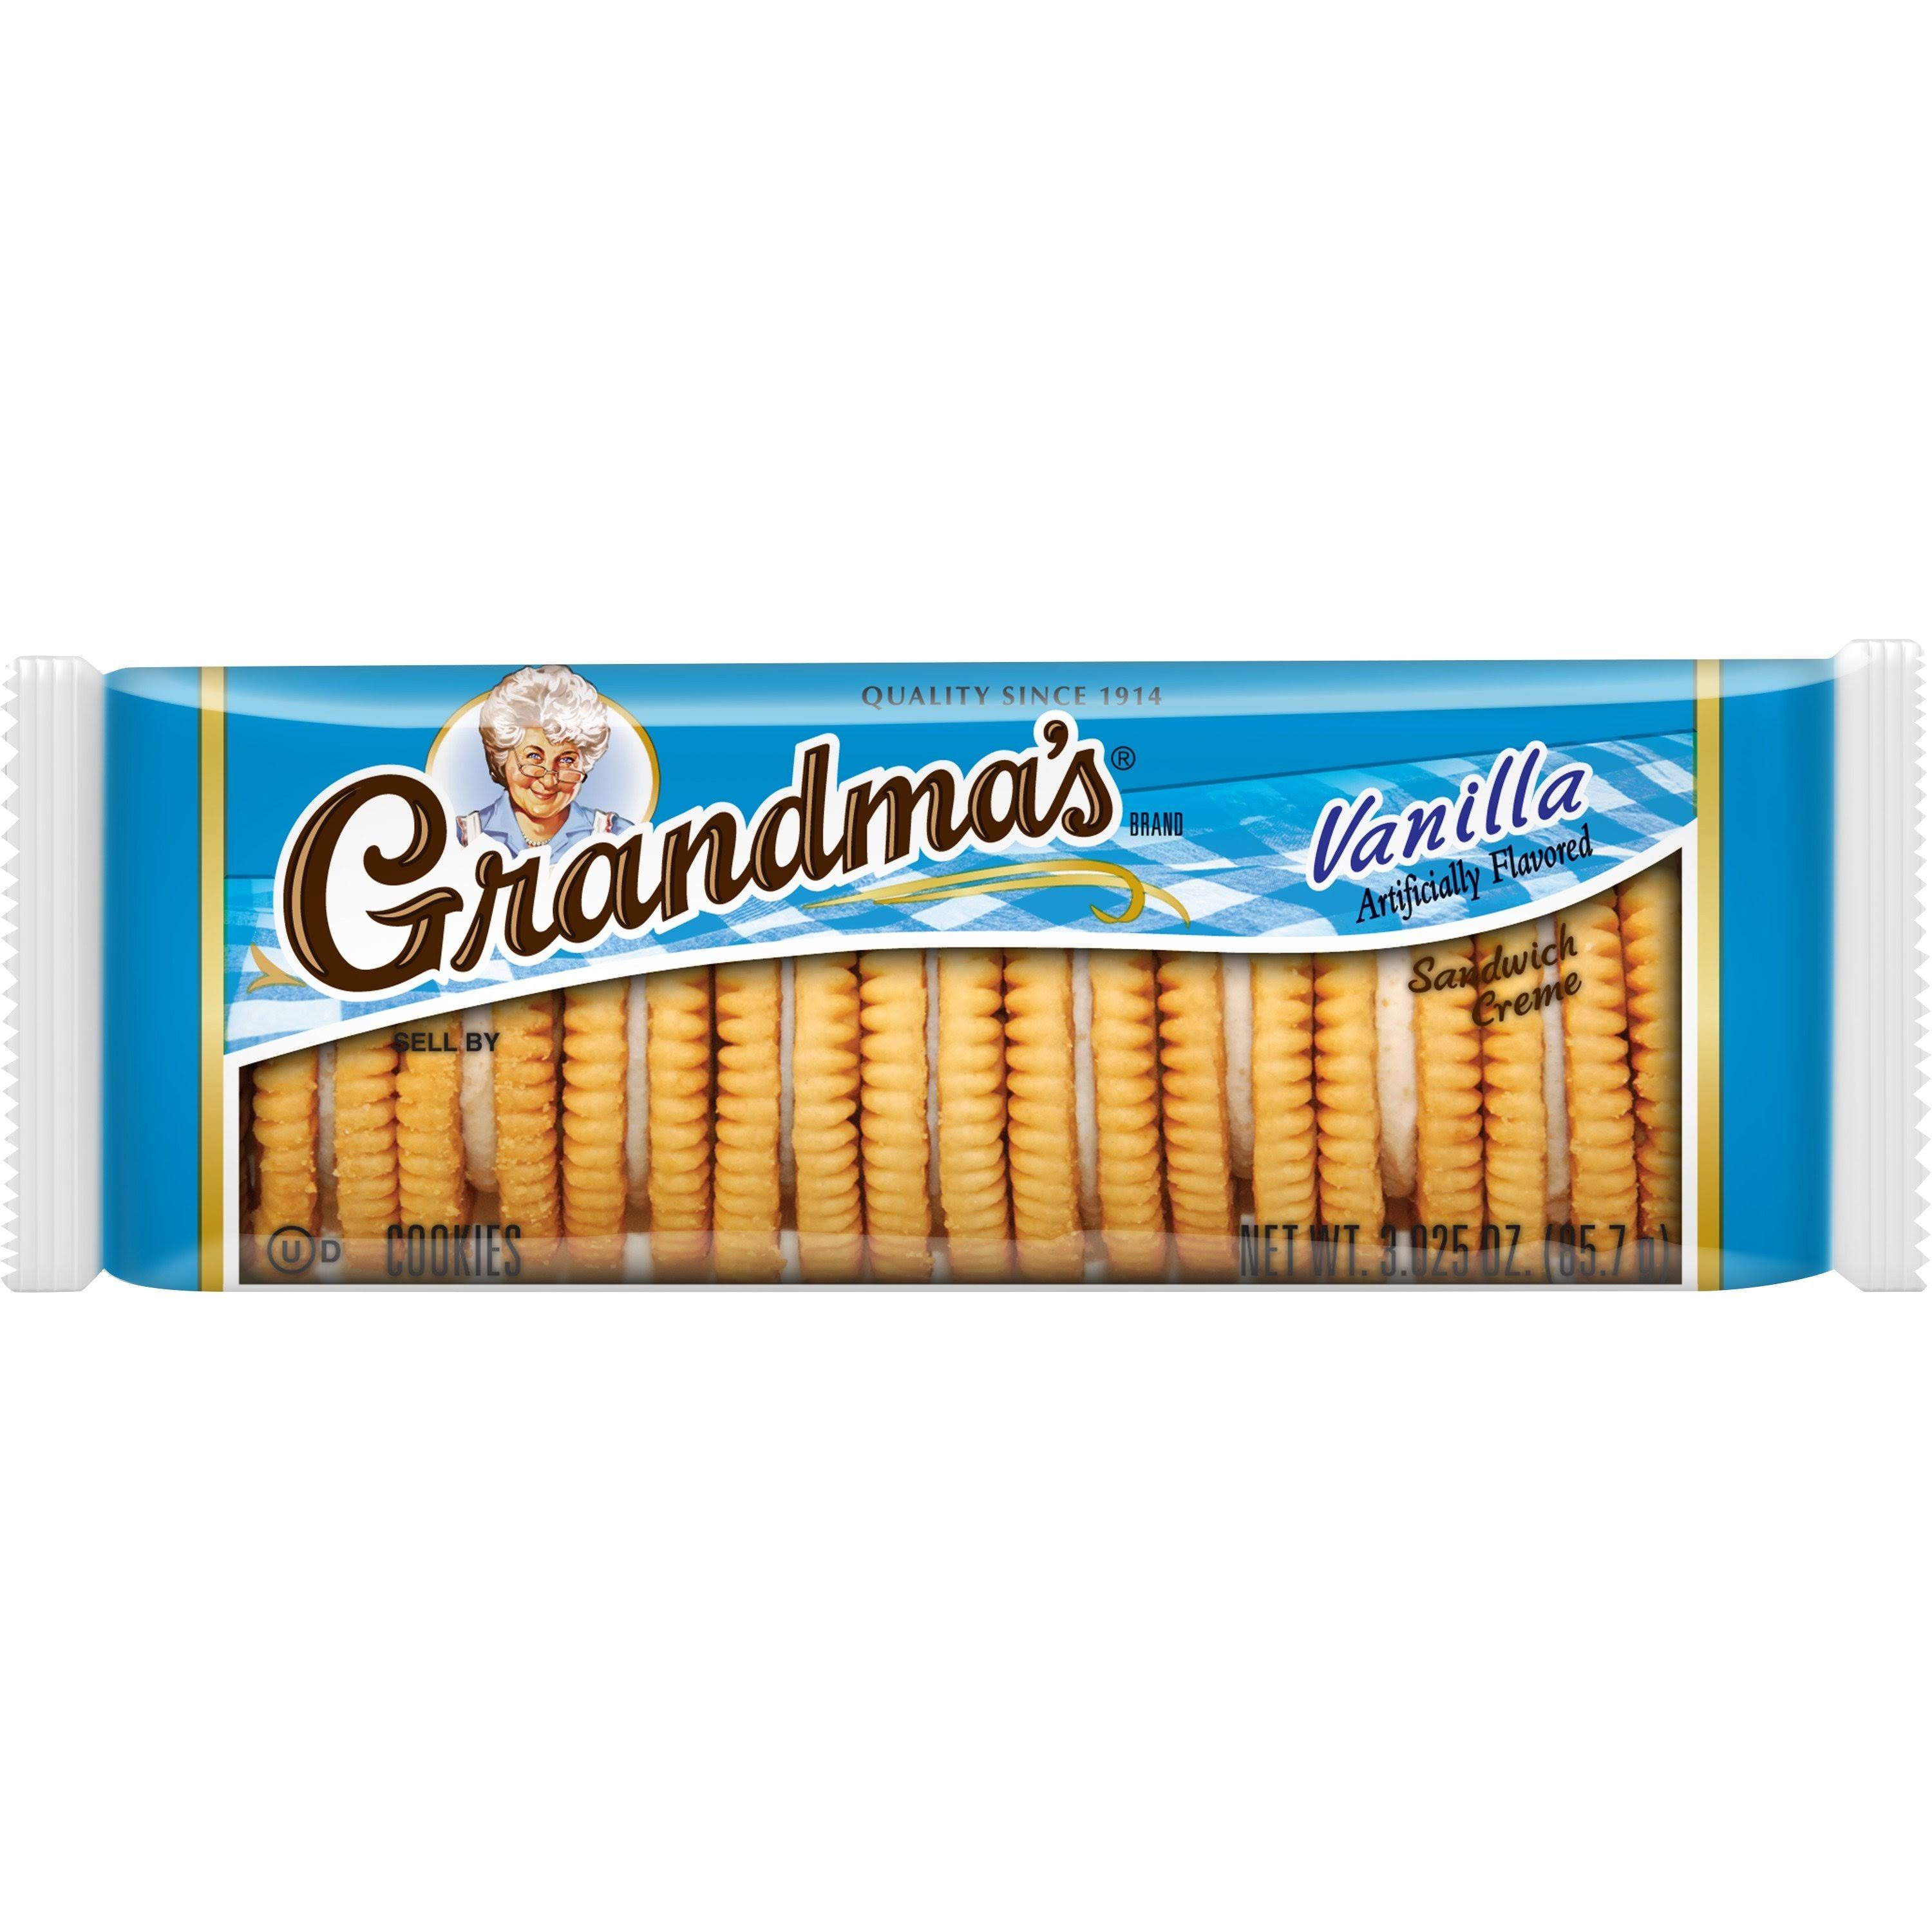 Grandma's Vanilla Sandwich Creme (3.025oz)